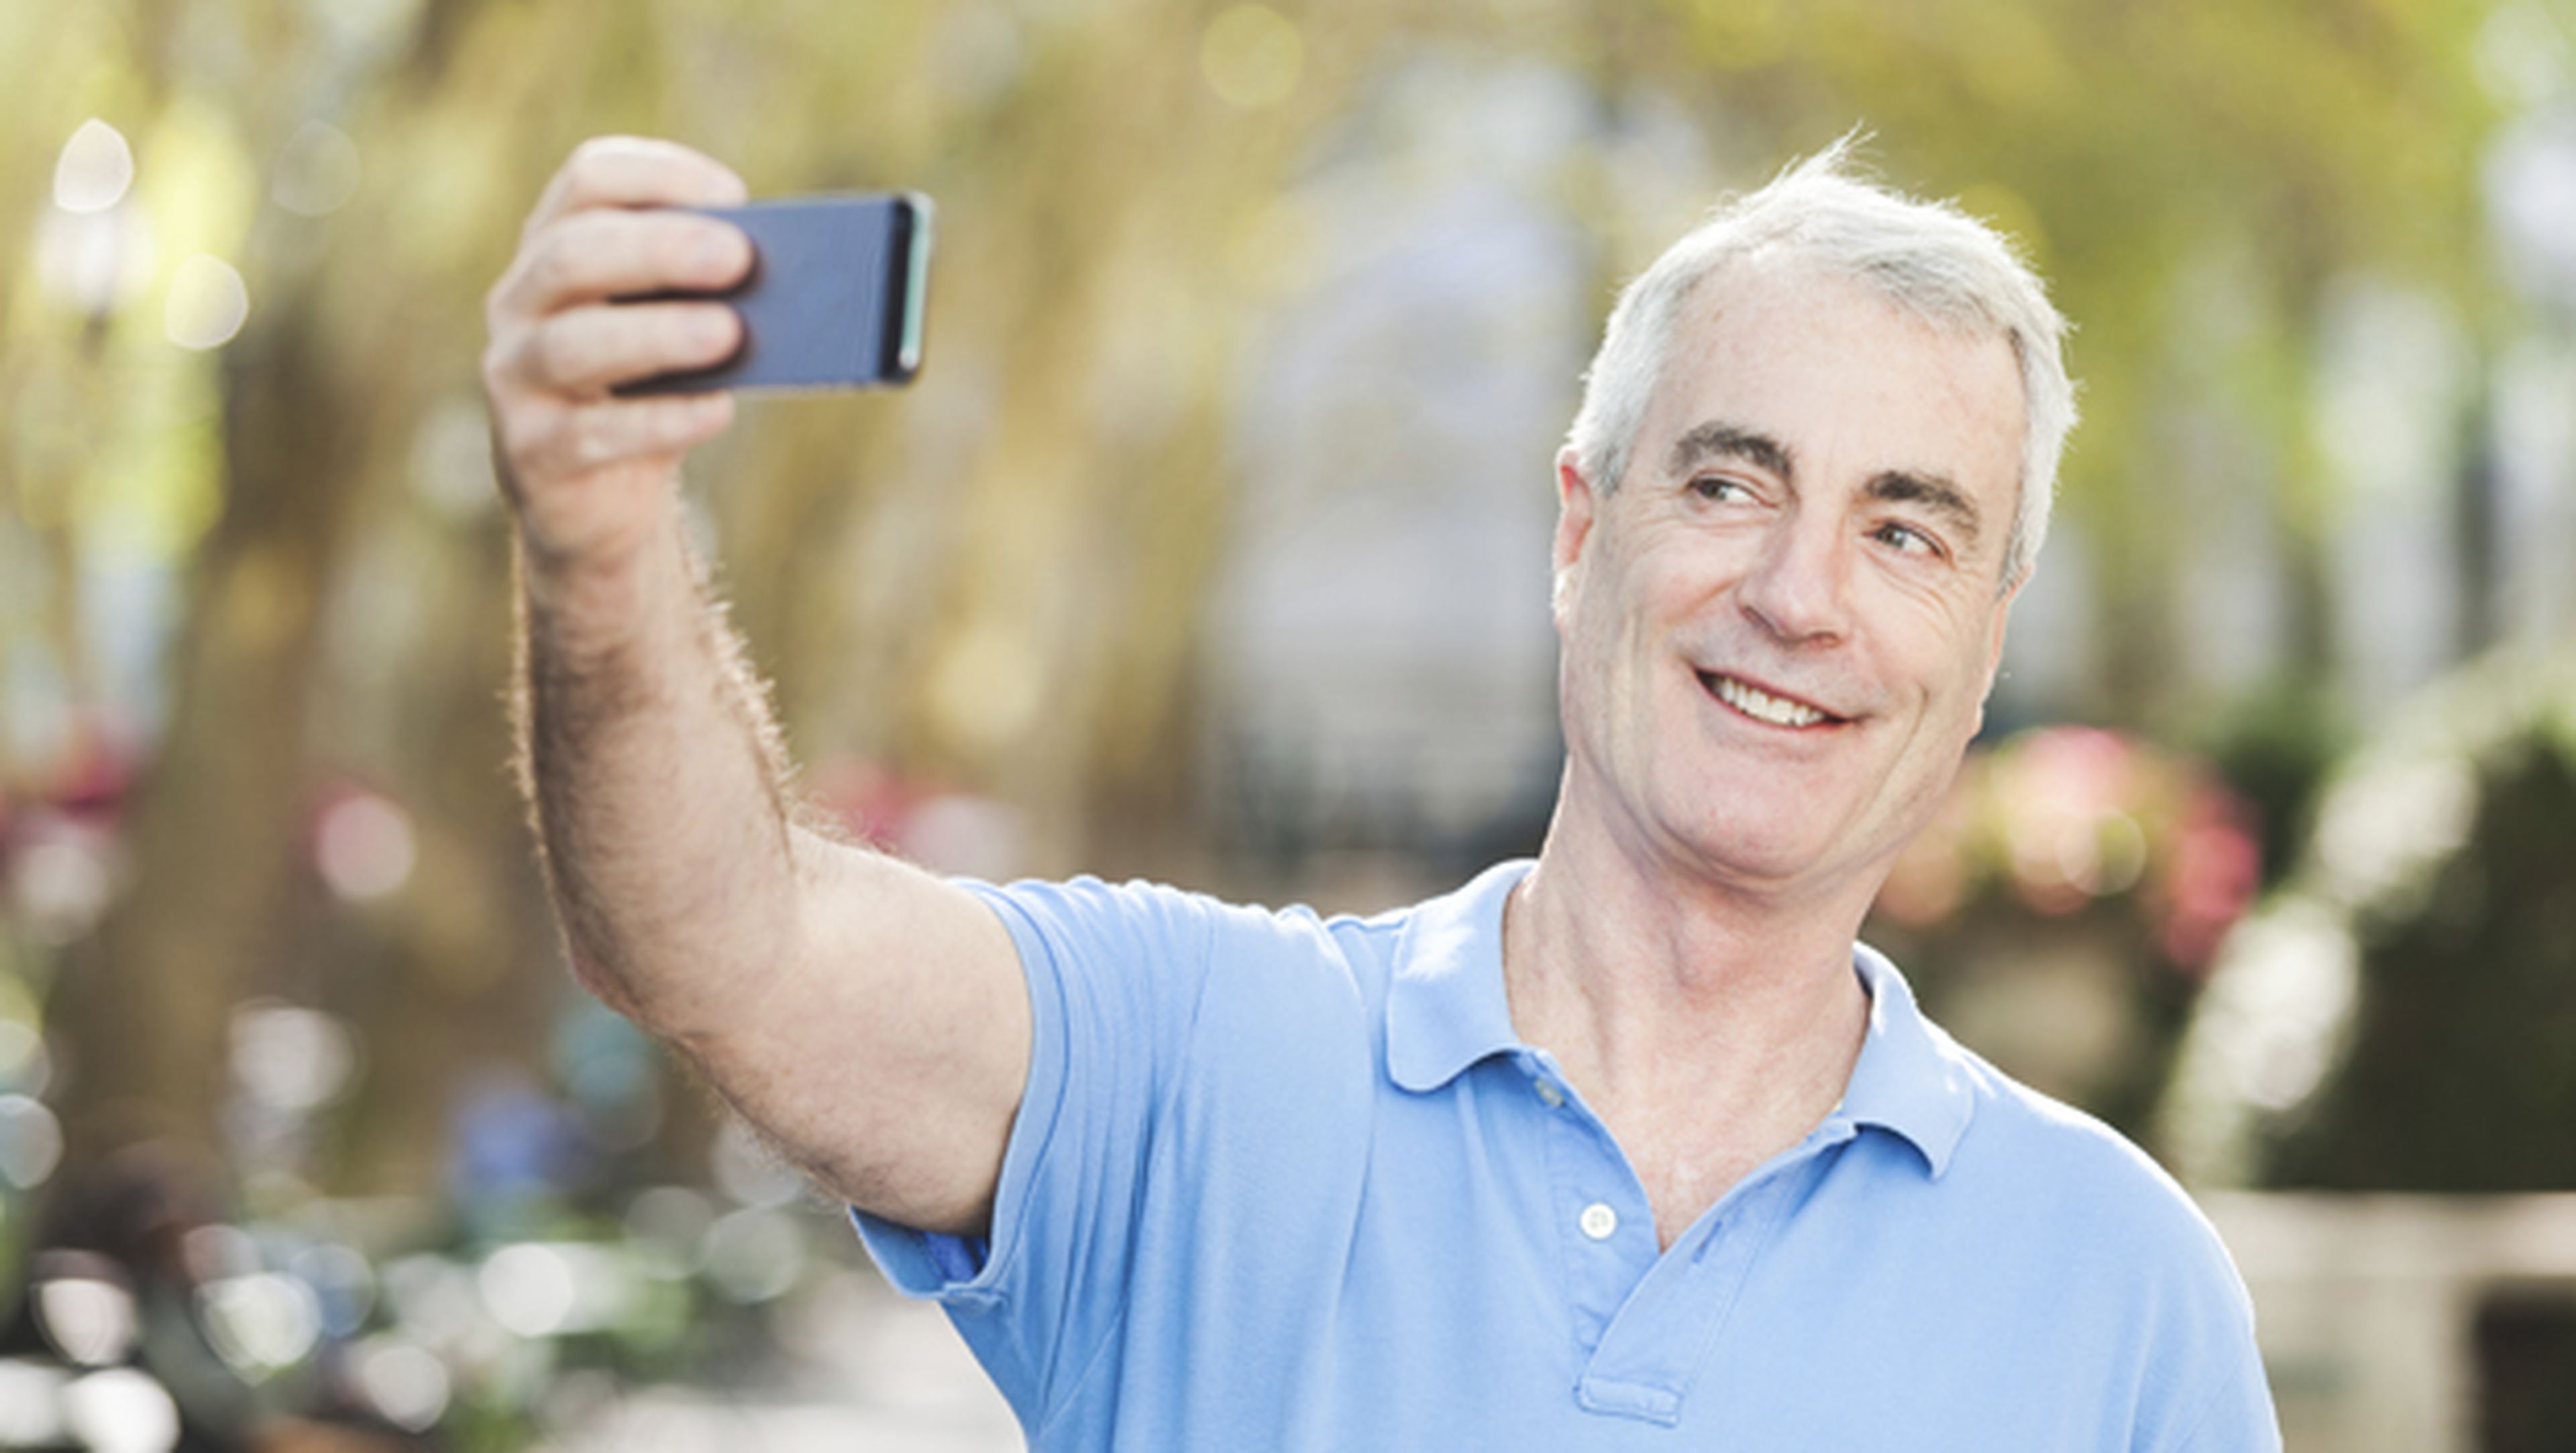 El iPhone podría desbloquearse con un selfie en el futuro